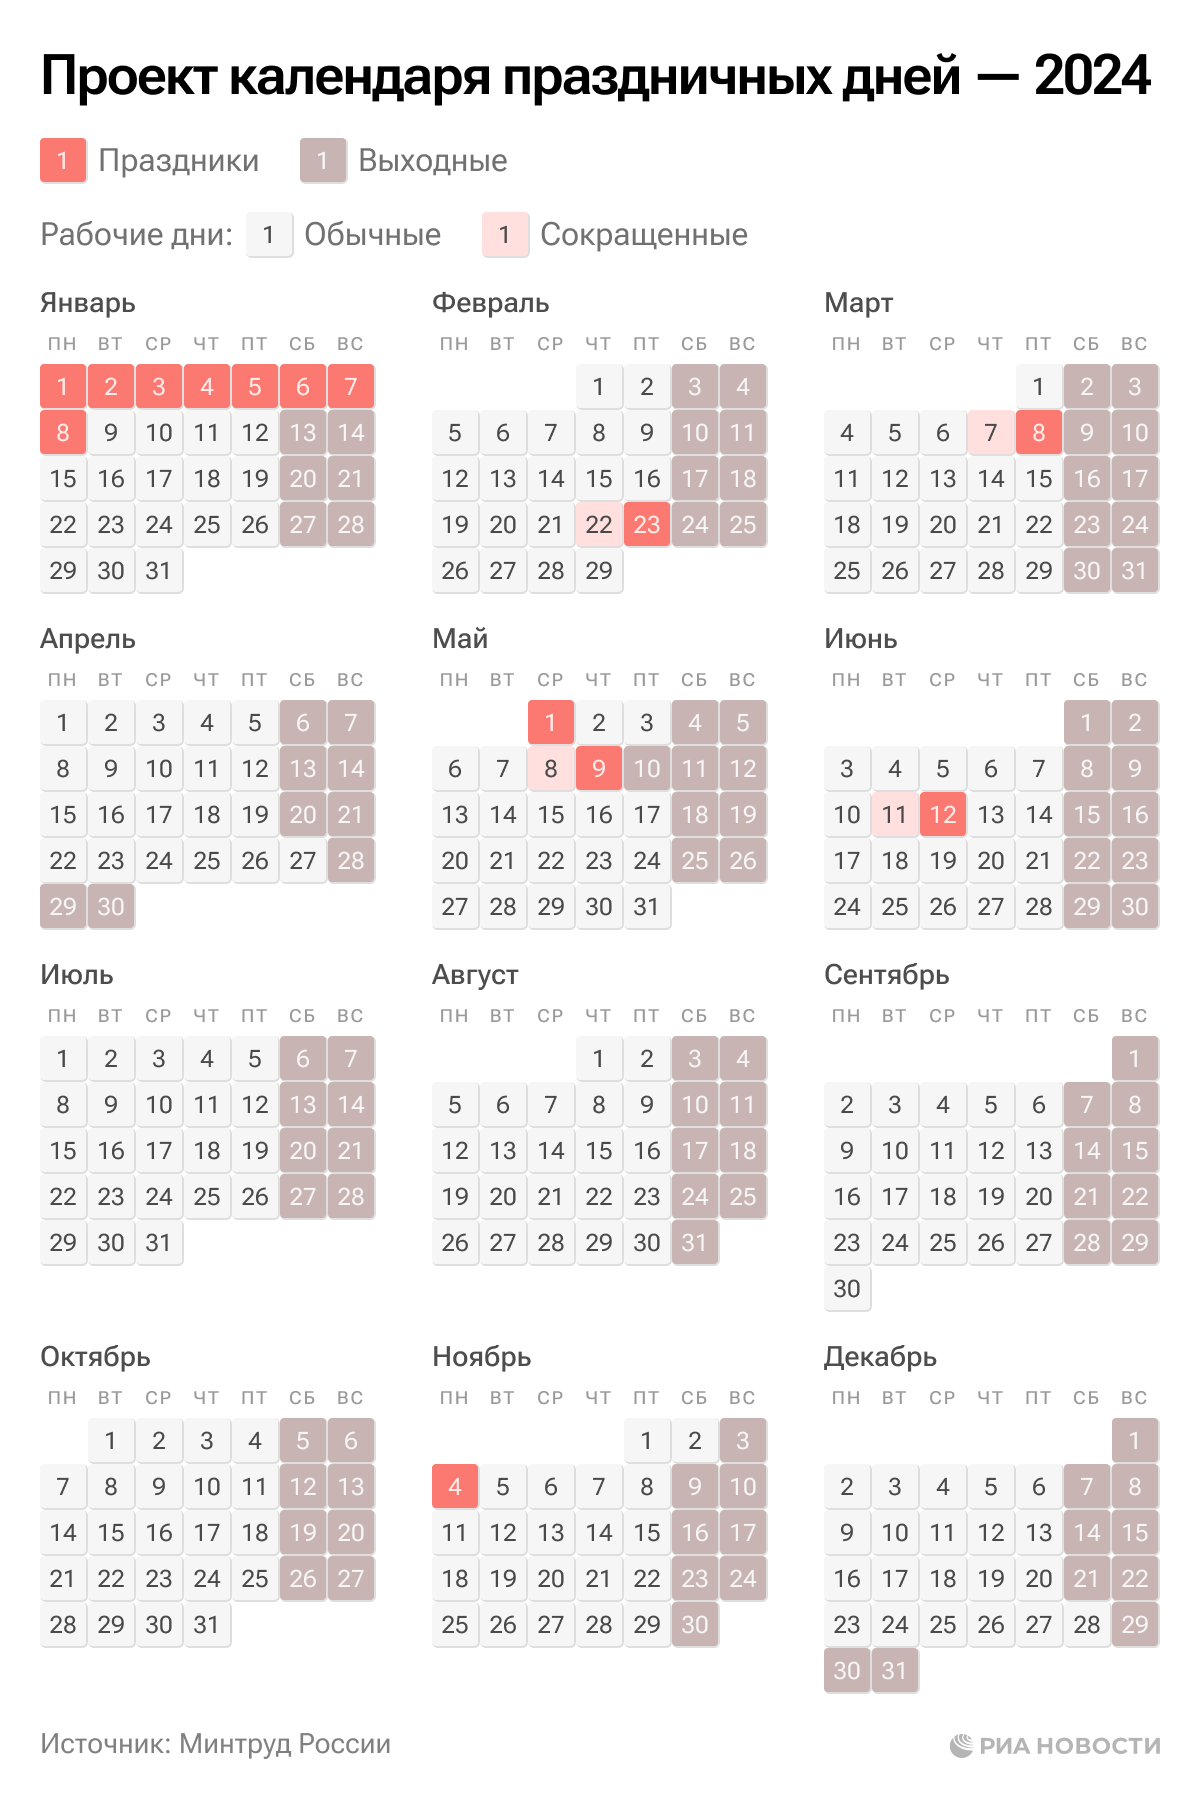 Как отдыхают на майские праздники 2024 шестидневка. Календарь праздников. Календарь выходных. Календарь рабочих дней. График праздничных нерабочих дней в 2024.